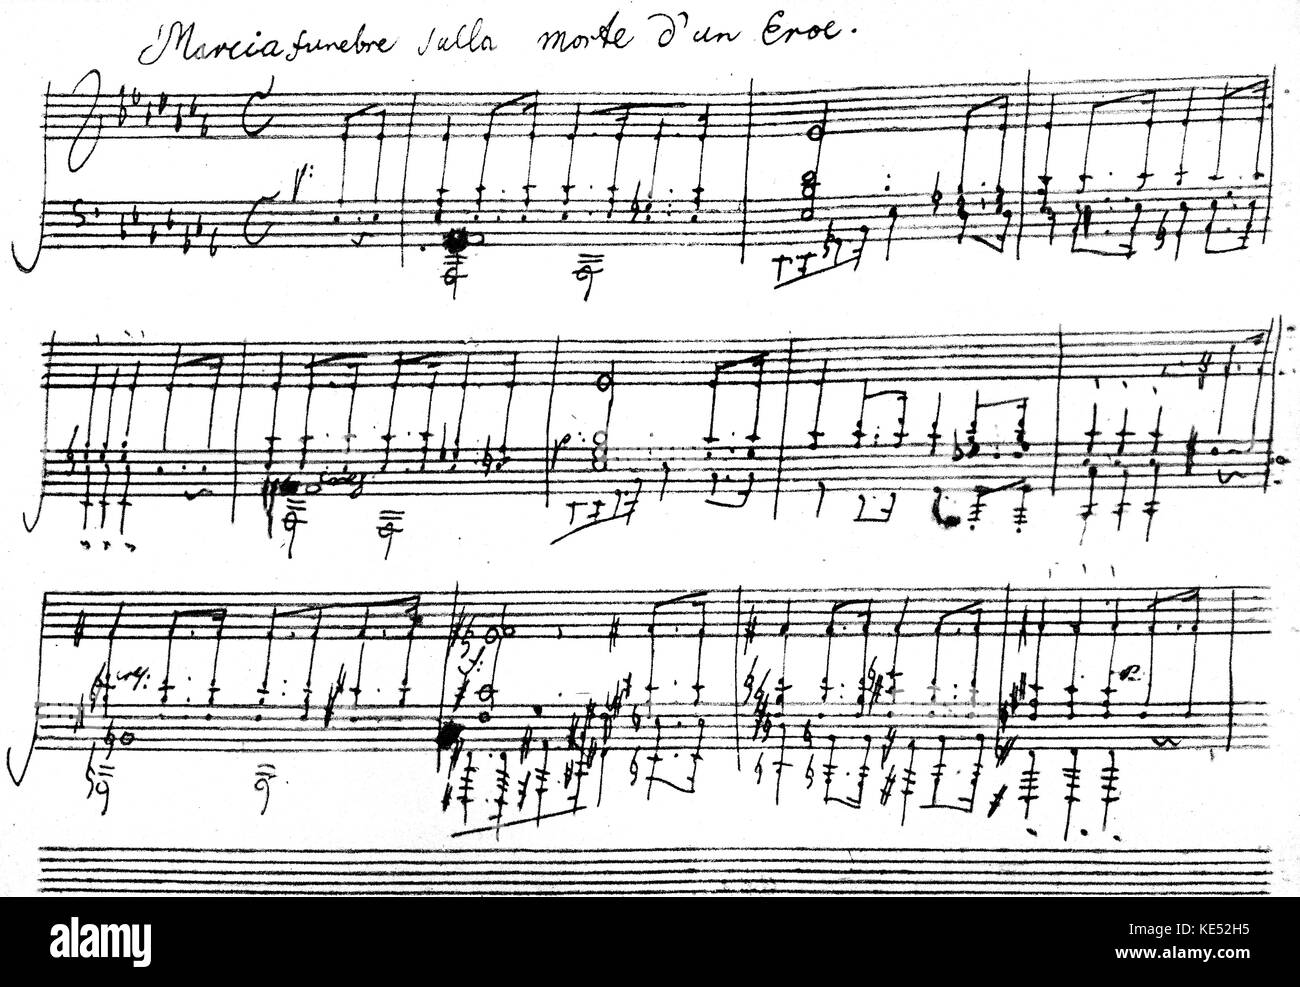 Ludwig van Beethoven, Sonate pour piano n°12 en la bémol majeur, Op. 26,  1800-1801. Marche funèbre en troisième mouvement. Score dans la main.  Compositeur allemand, 17 Décembre 1770- 26 mars 1827 Photo Stock - Alamy